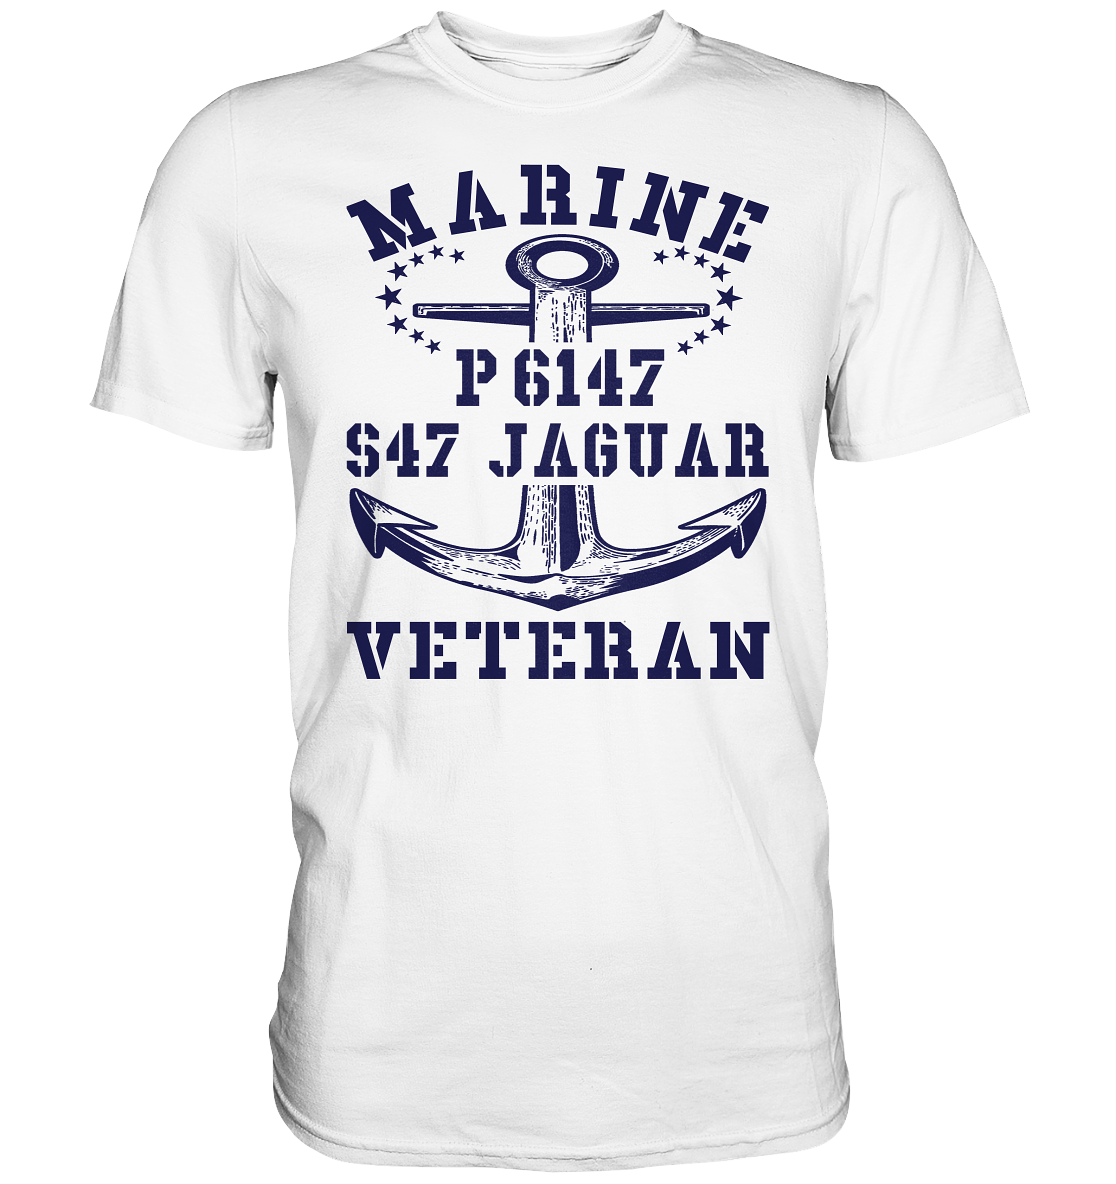 P6147 S47 JAGUAR Marine Veteran - Premium Shirt